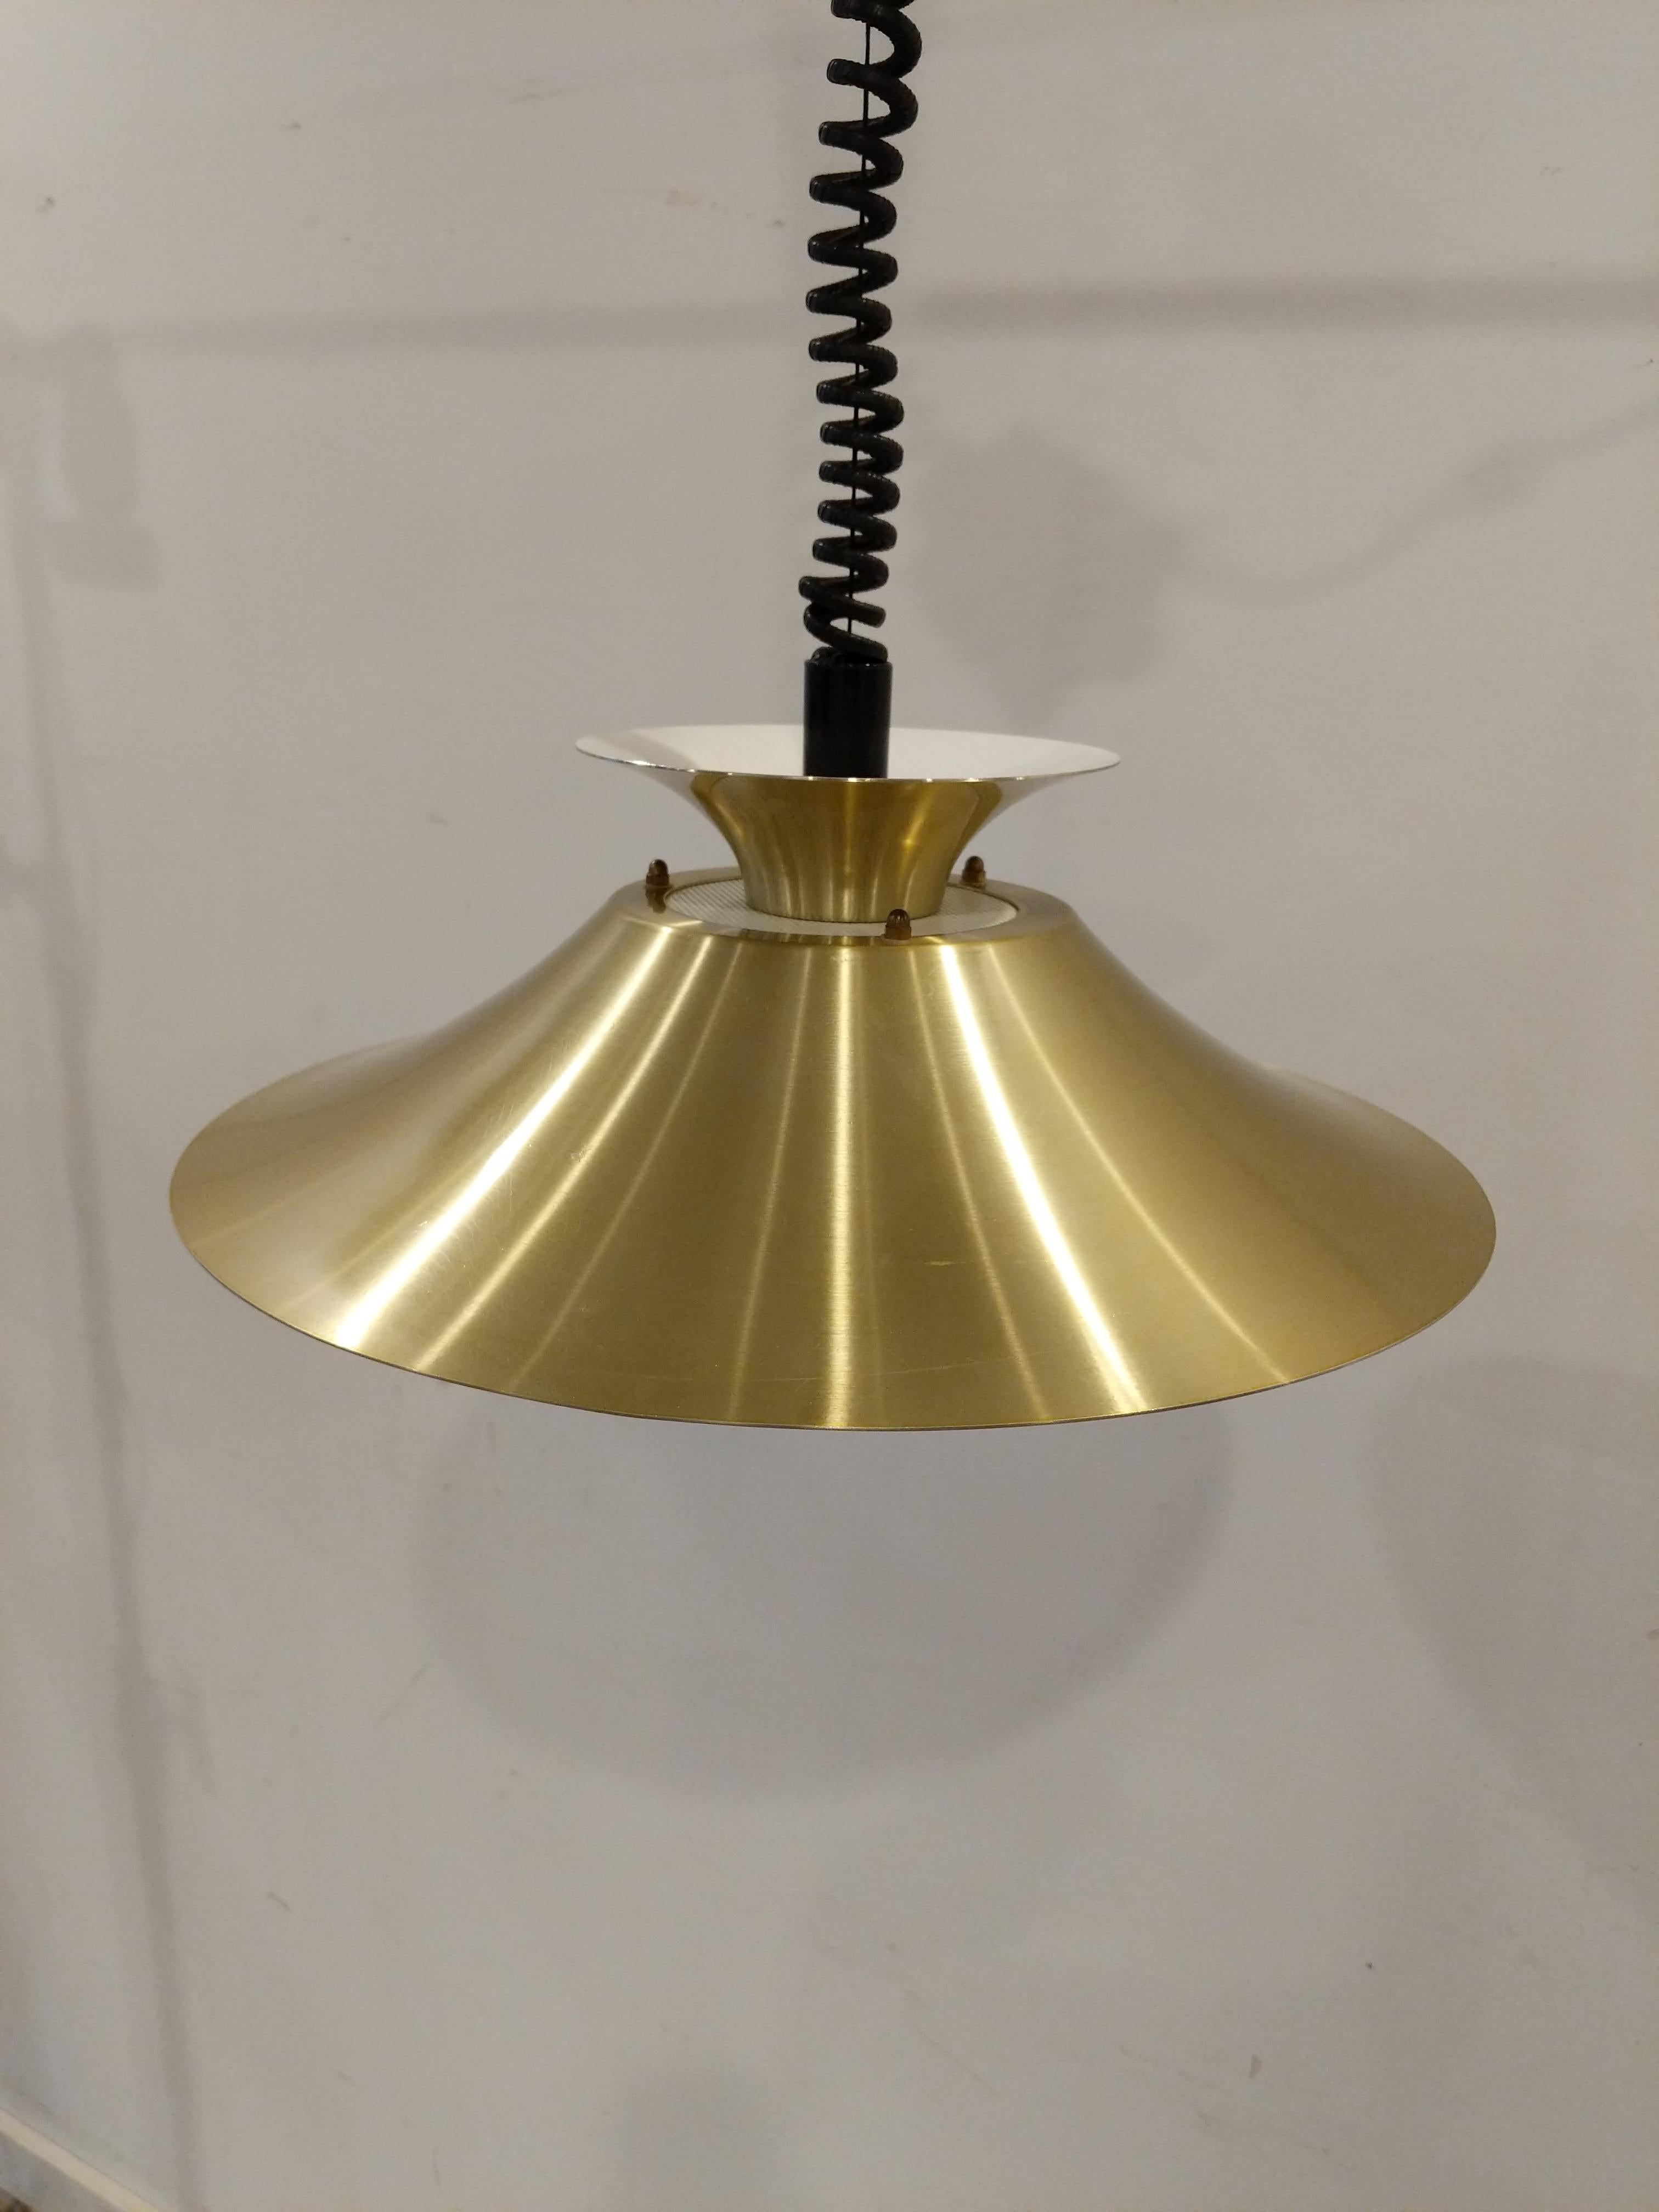 Authentique lampe / plafonnier / suspension vintage mid century Danish / Scandinavian Modern.

Importée directement du Danemark, cette lampe est en très bon état avec une légère usure due à l'âge (voir photos).

La lampe est en métal.

Dimensions